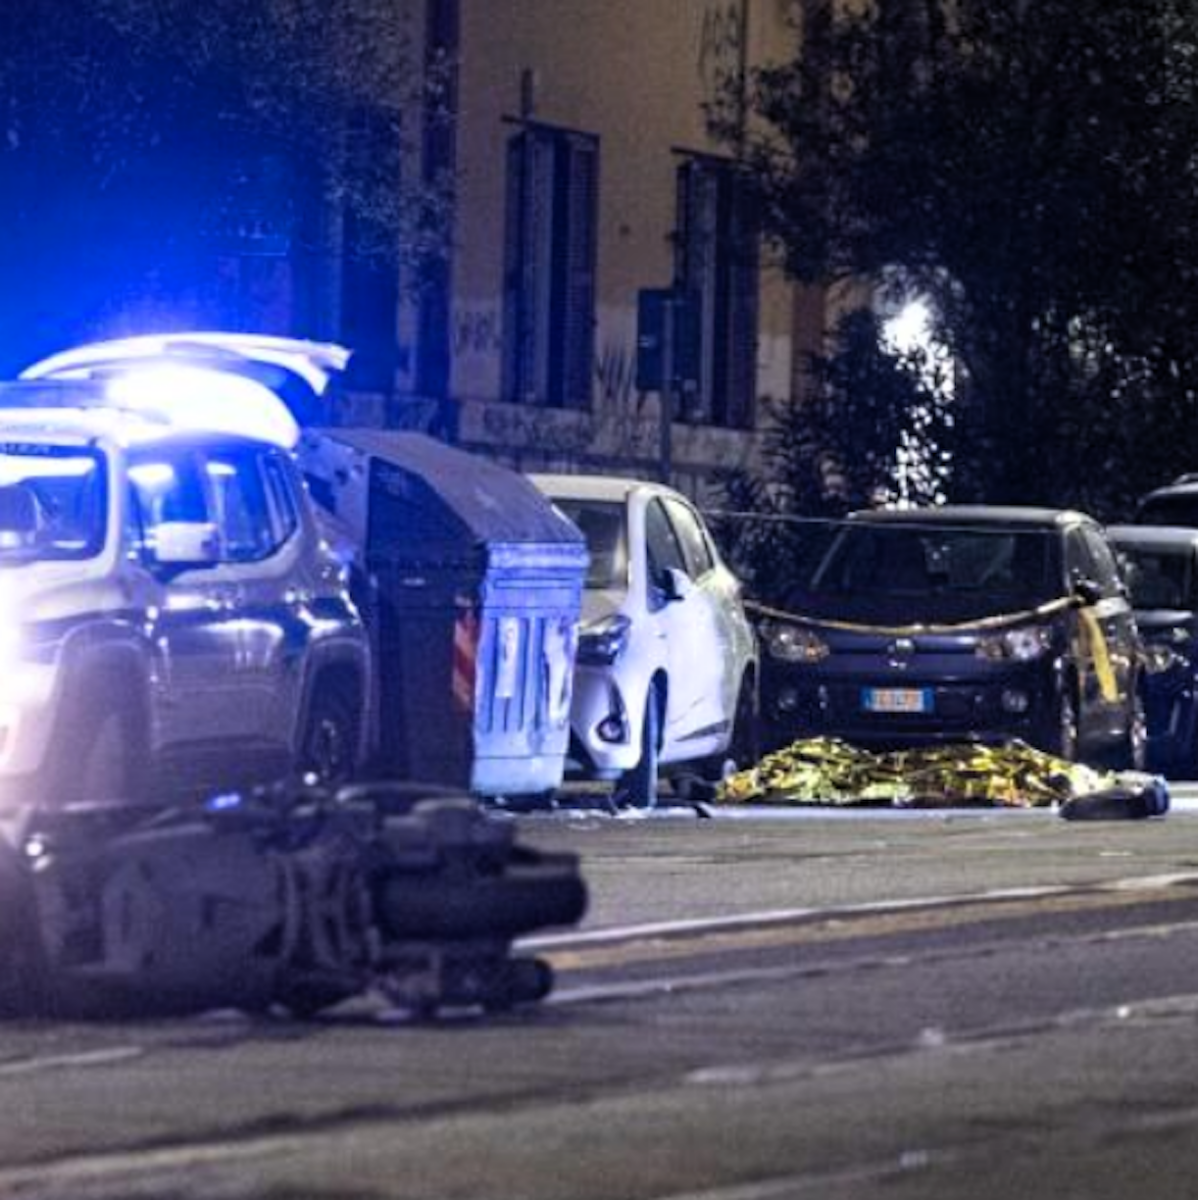 “Erano 6 in macchina”. Tragico incidente: 2 morti e 4 feriti